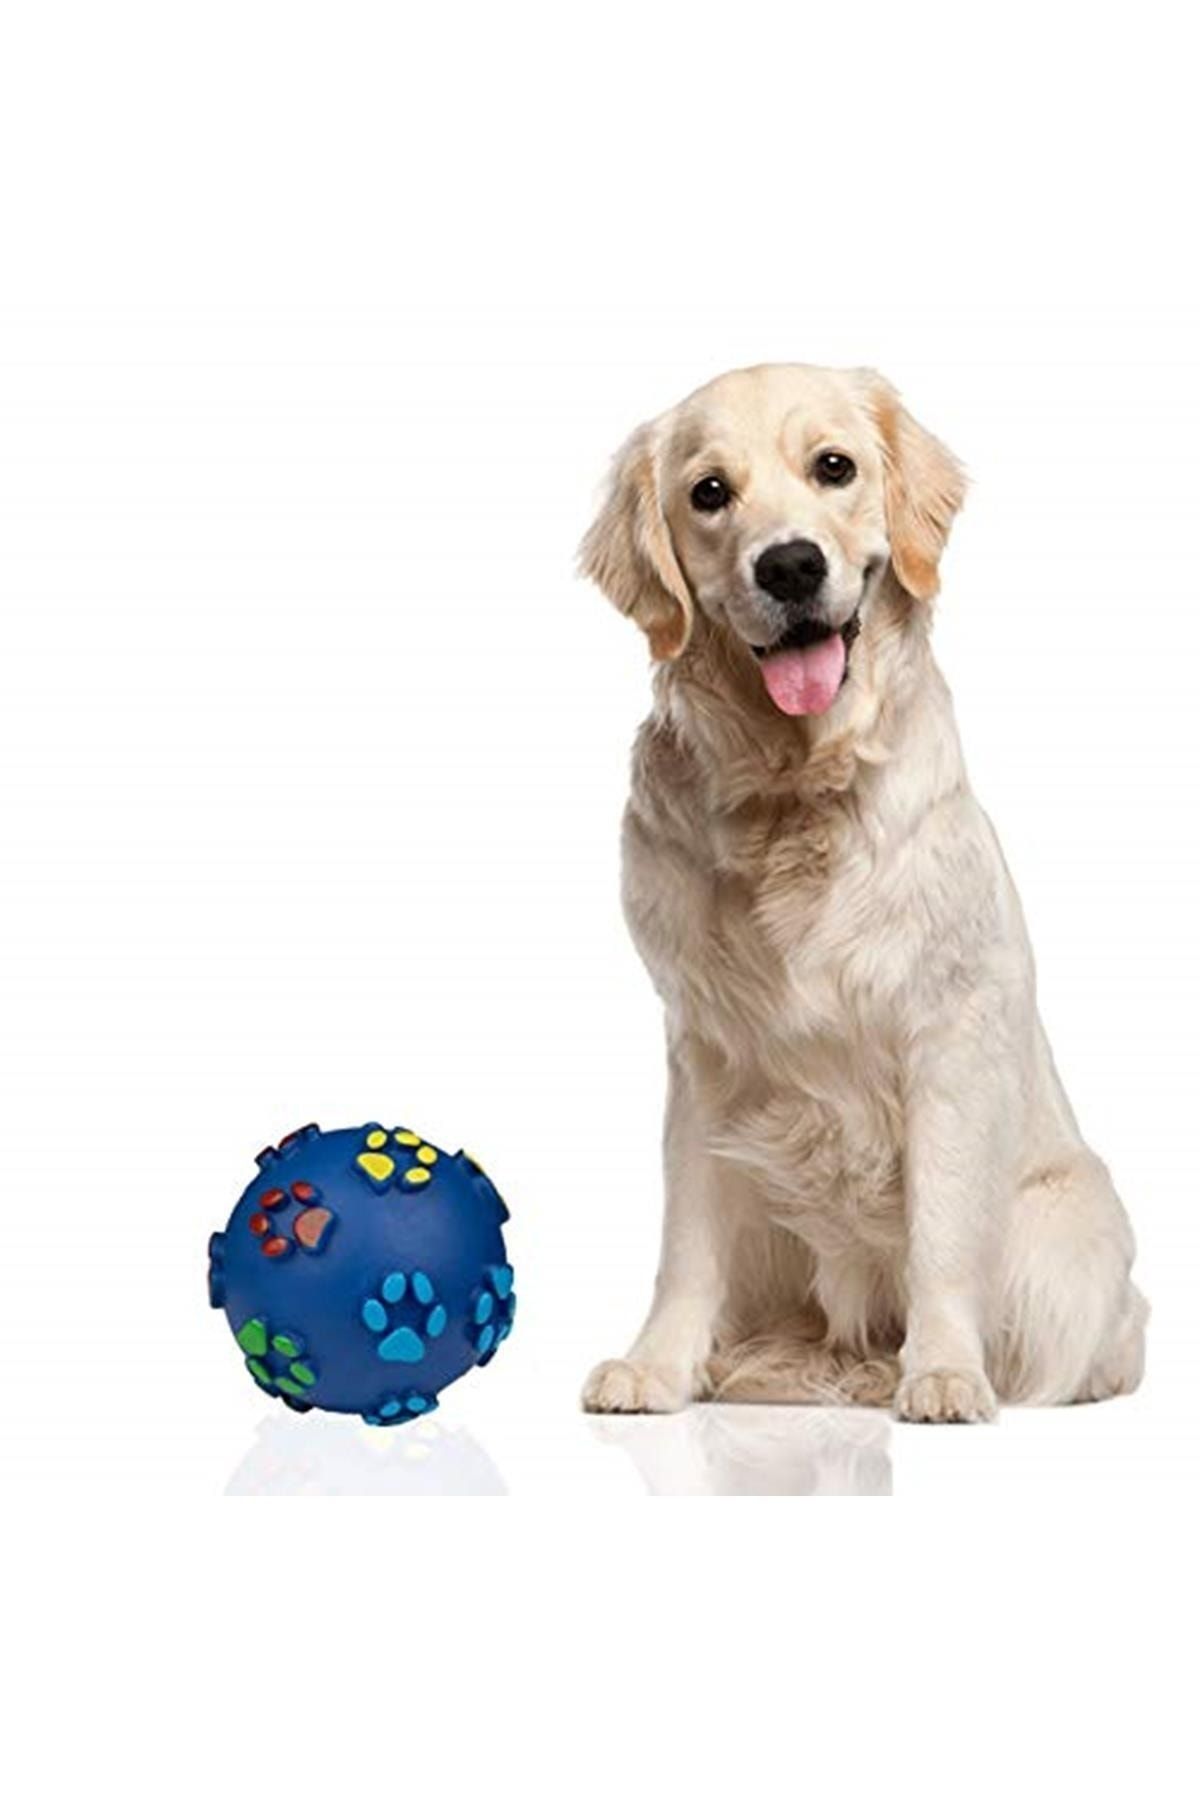 Griffonpet Marka: Sesli Köpek Büyük Top Oyuncak Çapı 9.5 Cm Kategori: Köpek Oyuncağı